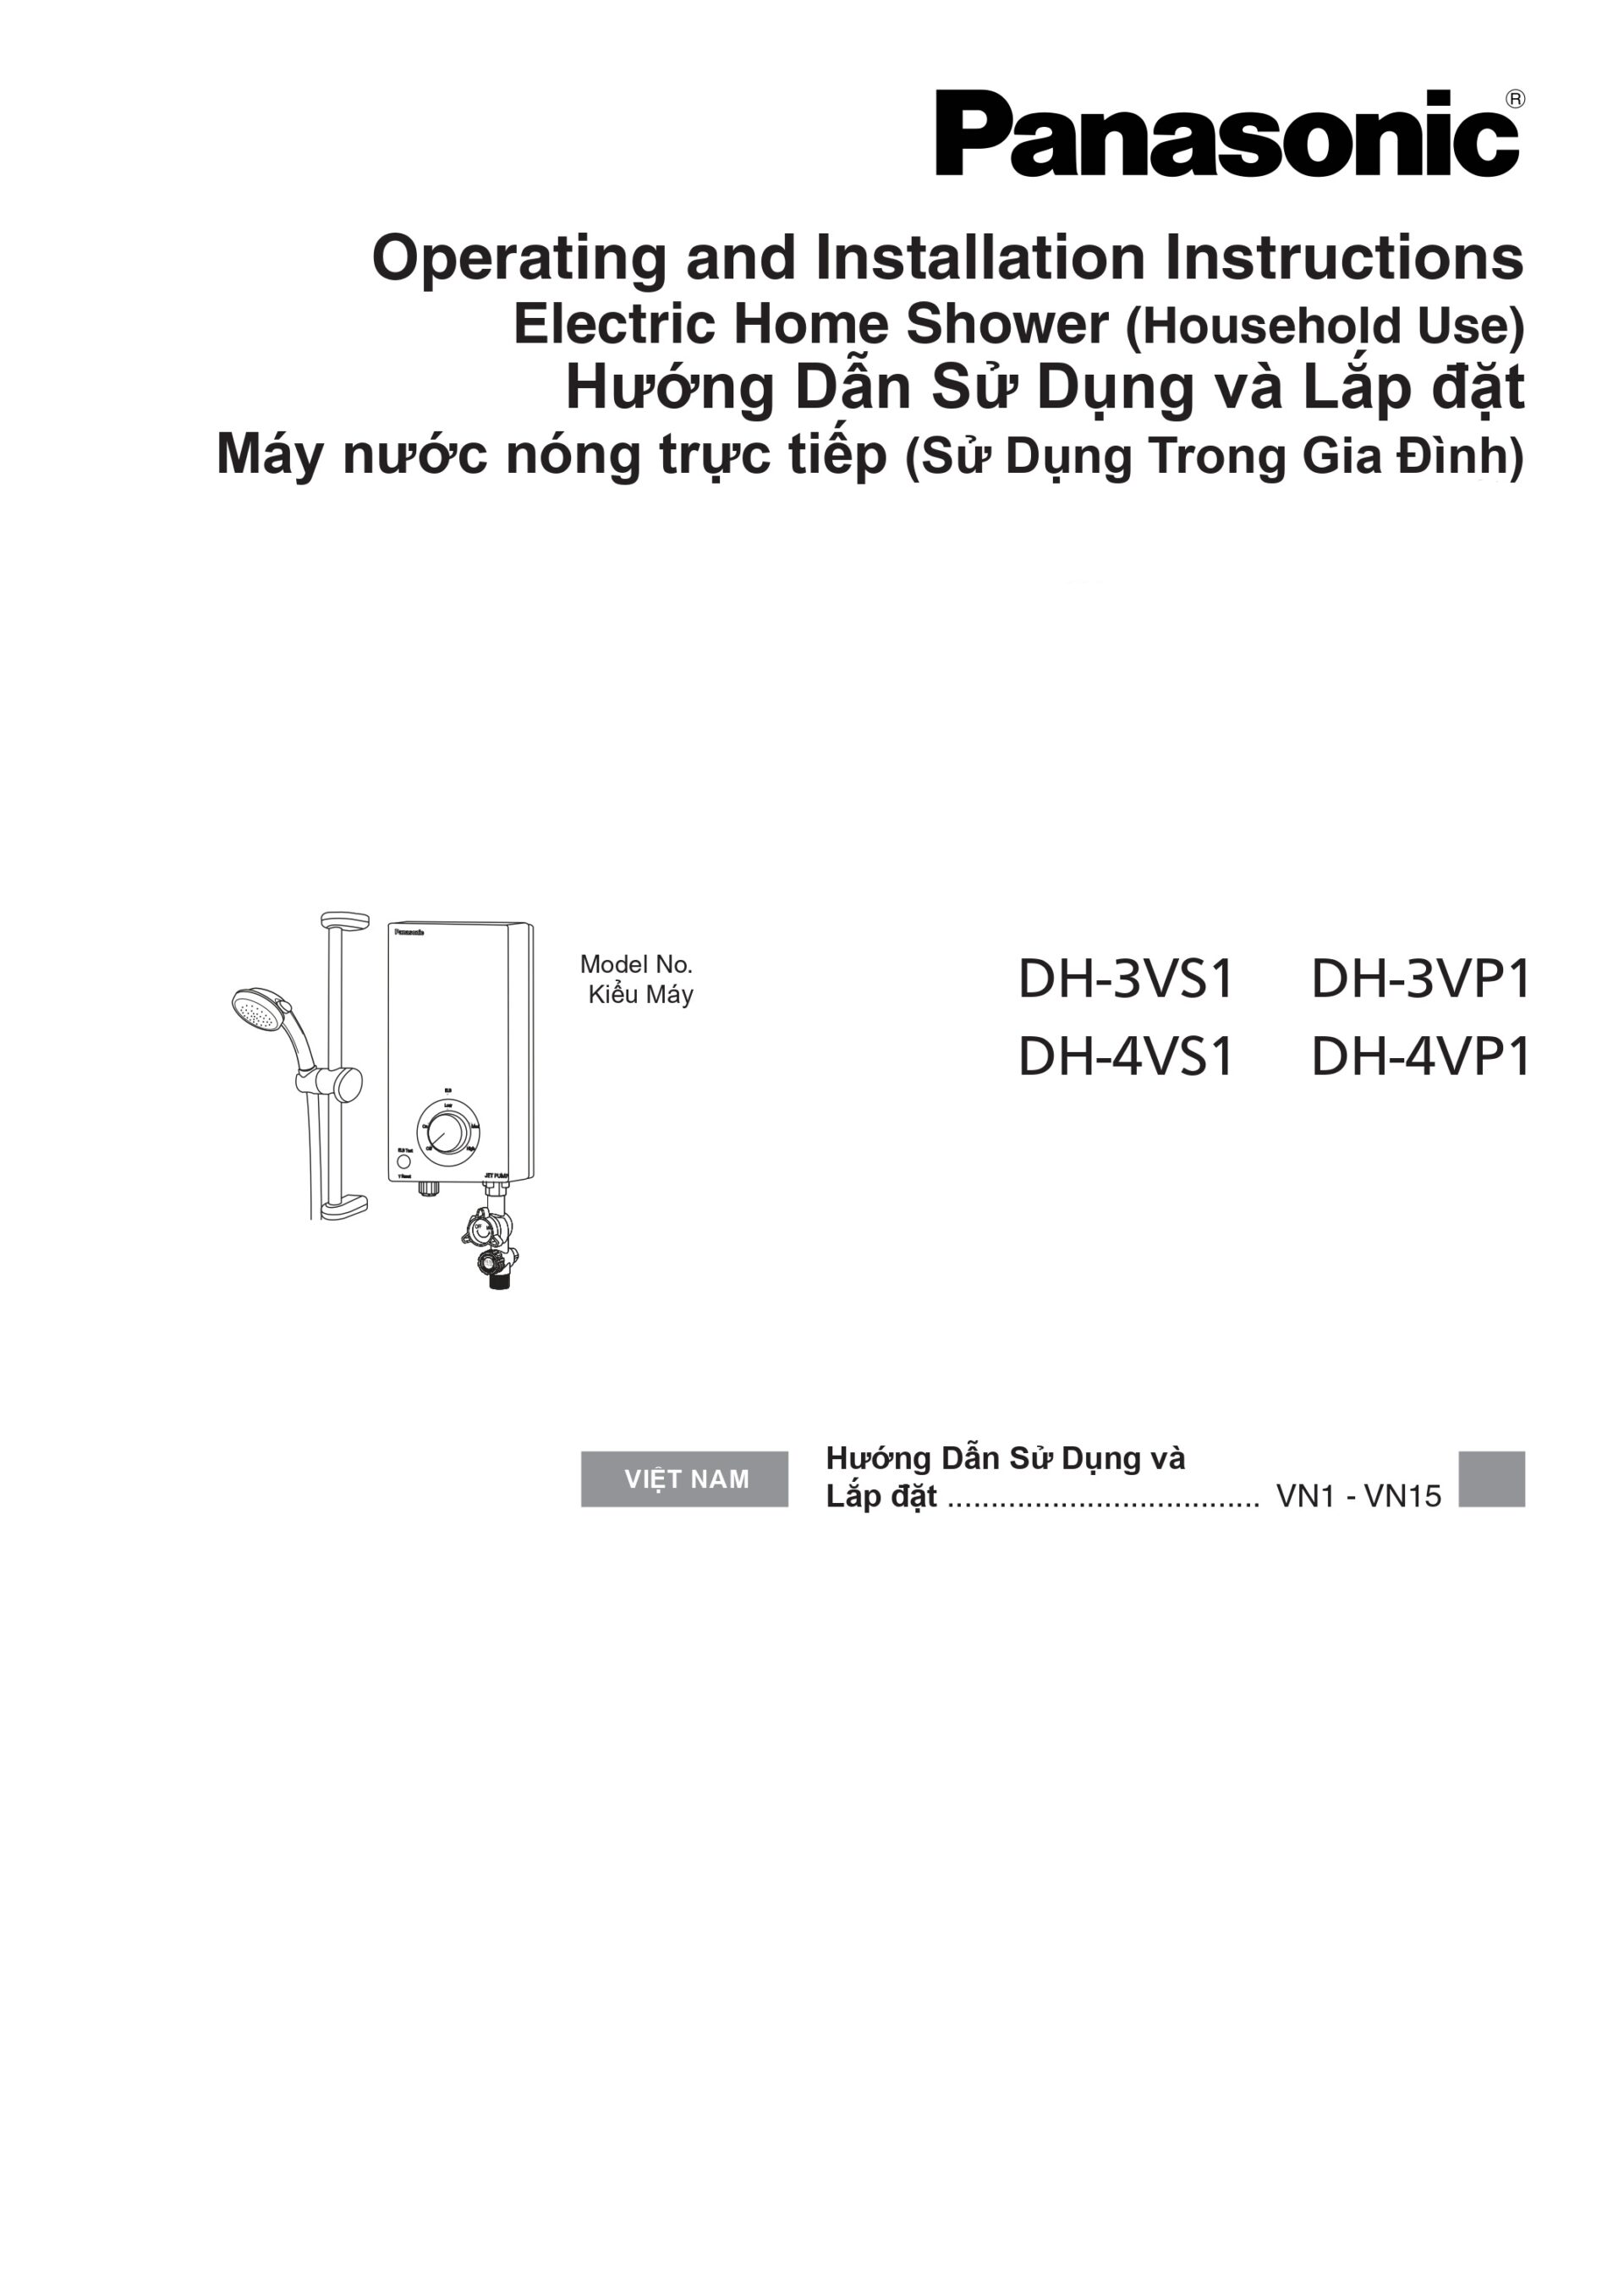 Hướng dẫn sử dụng và lắp đặt máy nước nóng Panasonic V-Series - Trang 1/16